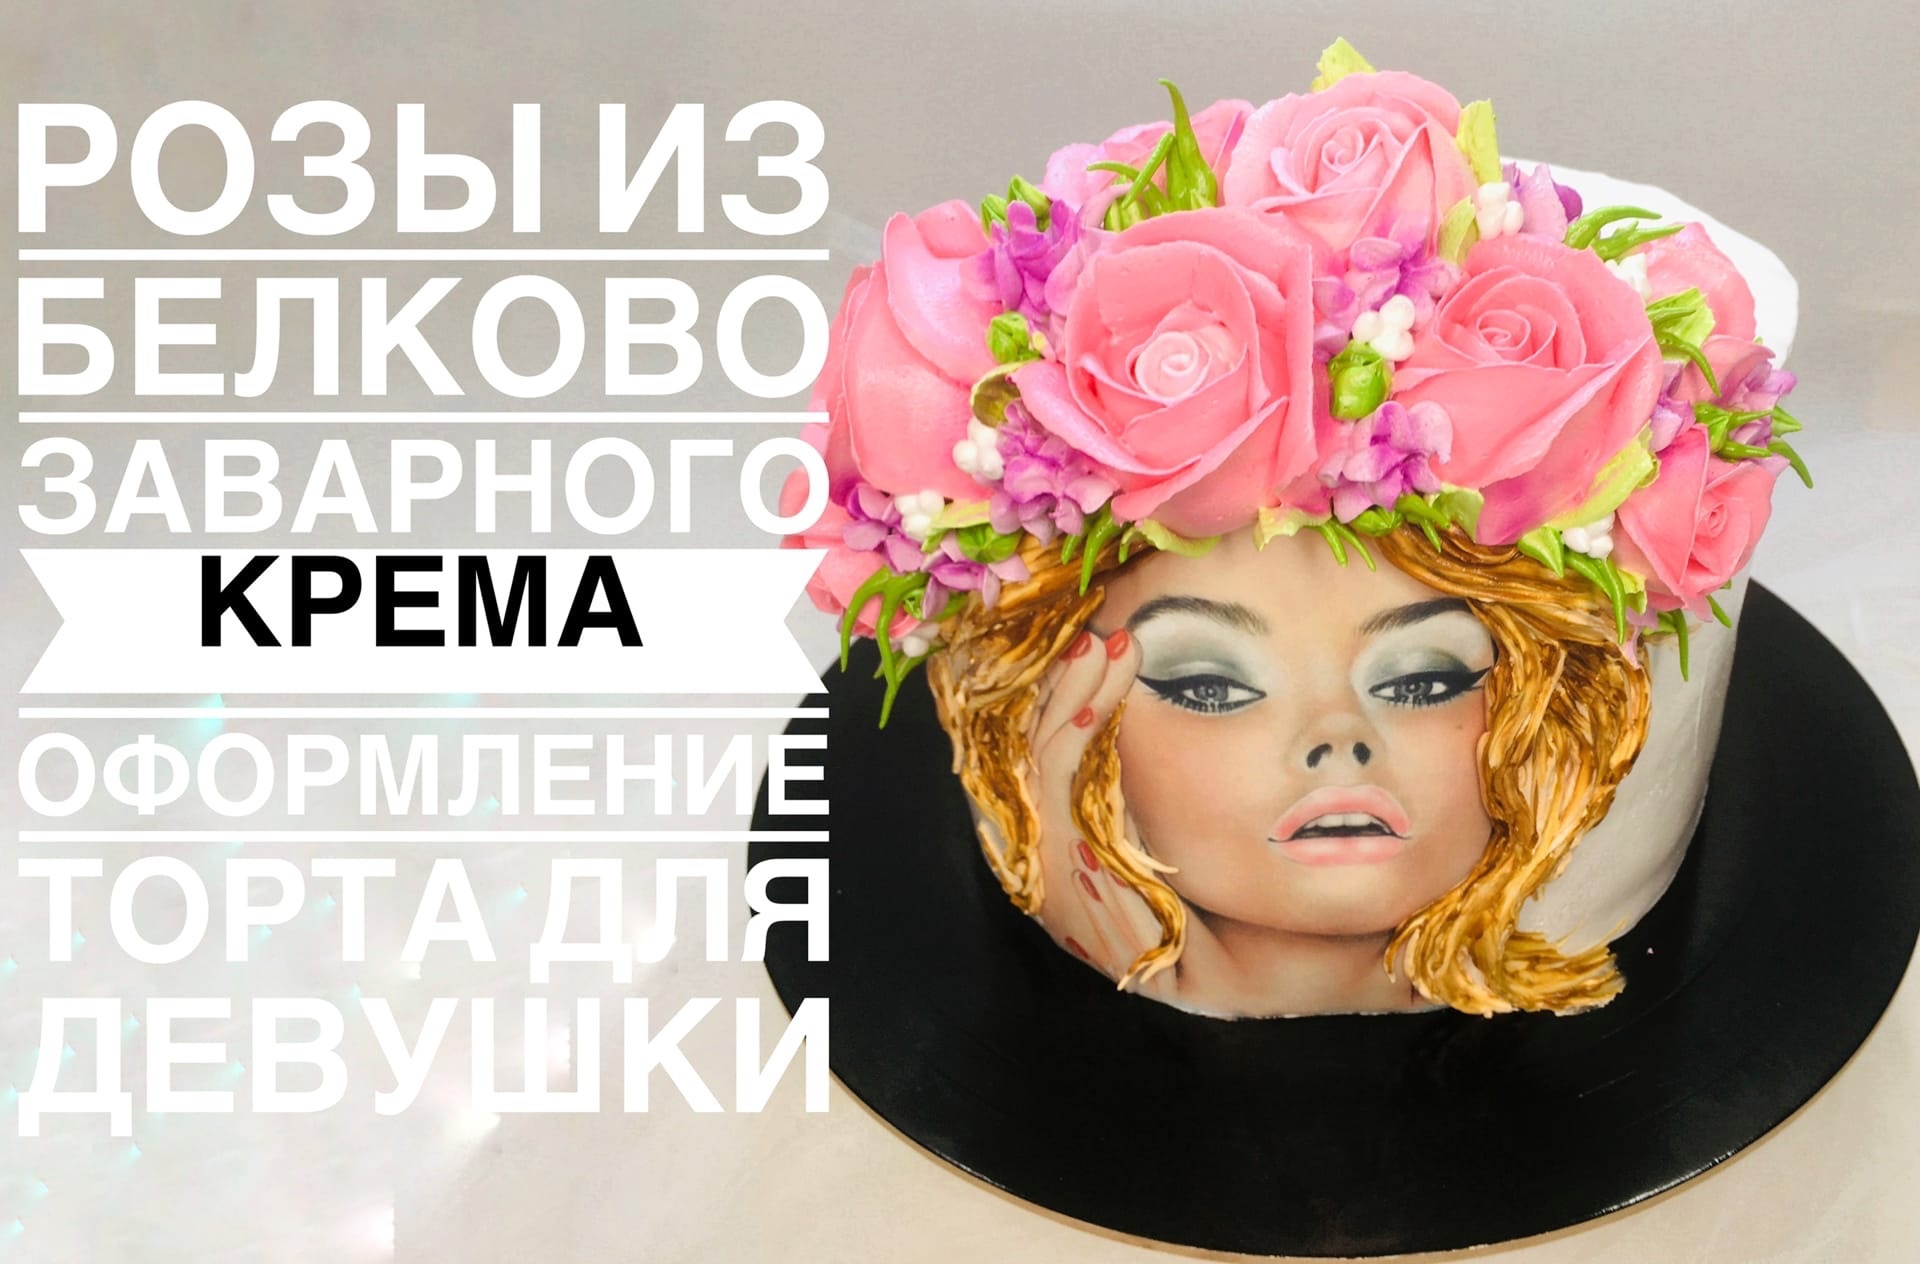 Оформление торта кремовыми цветами_How to make cake with cream colors_Como fazer um bolo com flores.